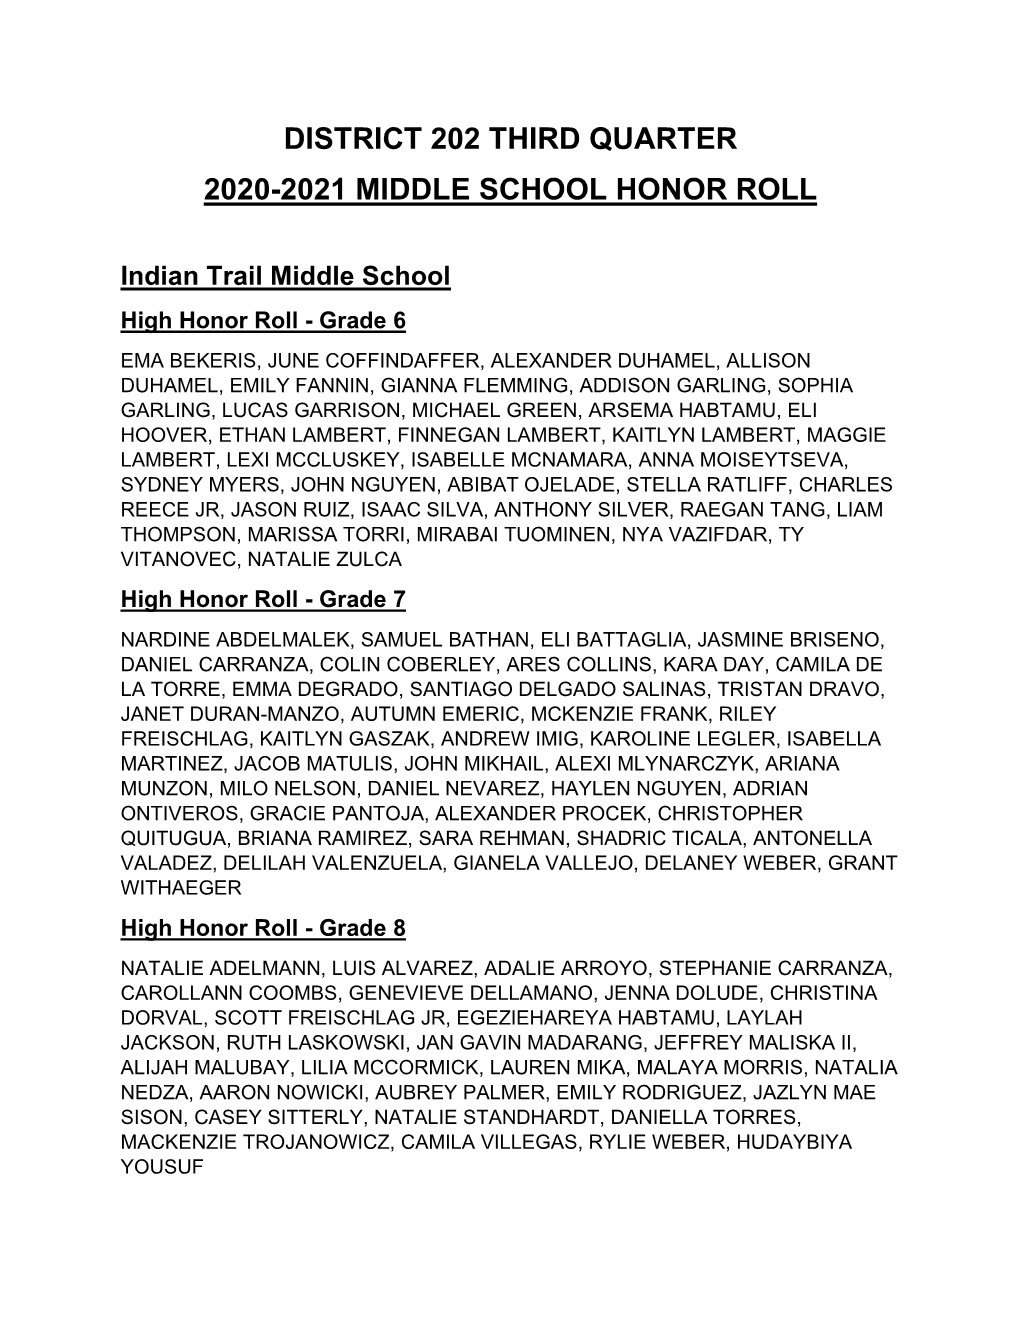 2020-21 Third Quarter Honor Roll